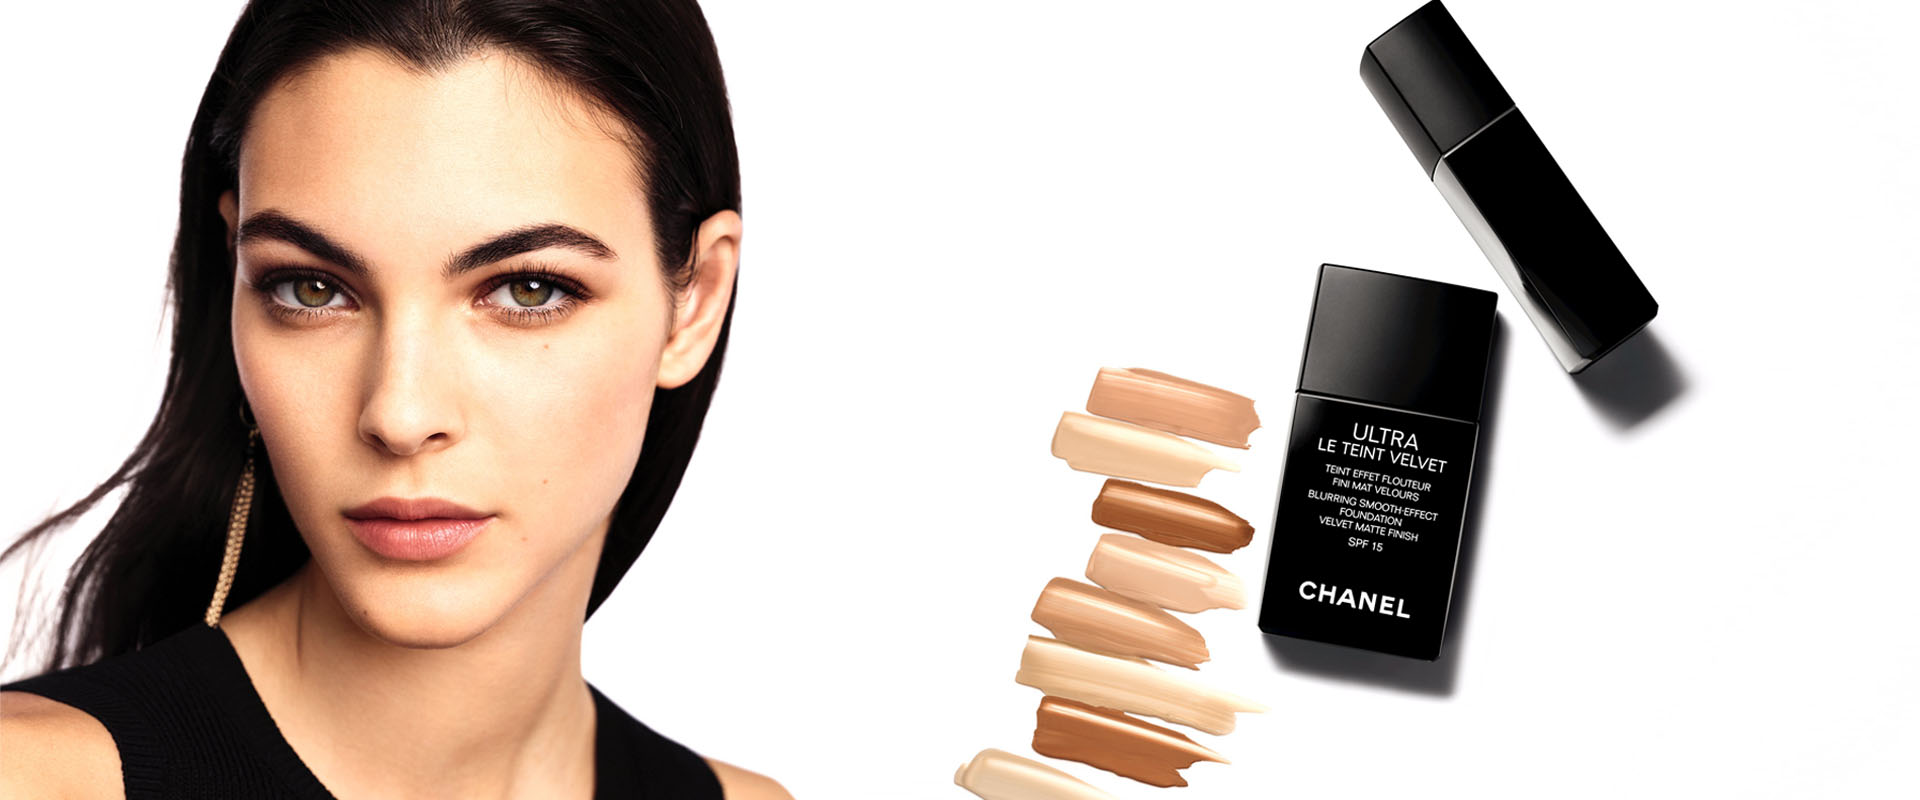 Chanel Ultra Le Teint Velvet  review  Marshmalloworld